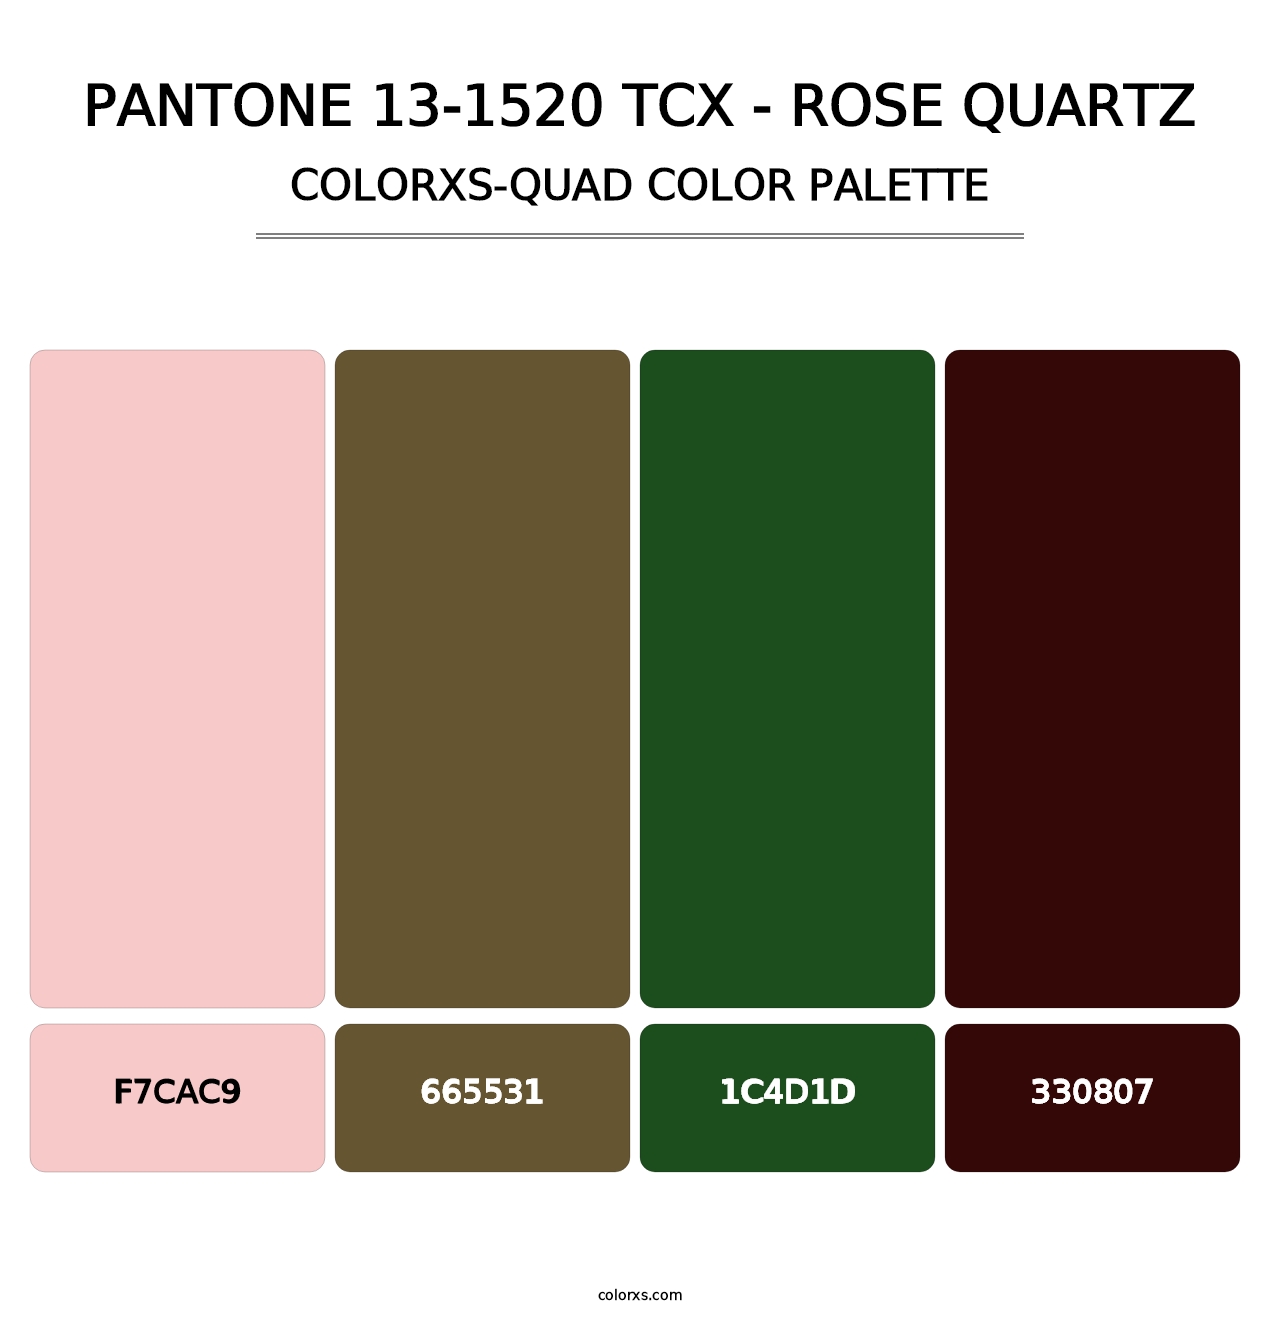 PANTONE 13-1520 TCX - Rose Quartz - Colorxs Quad Palette